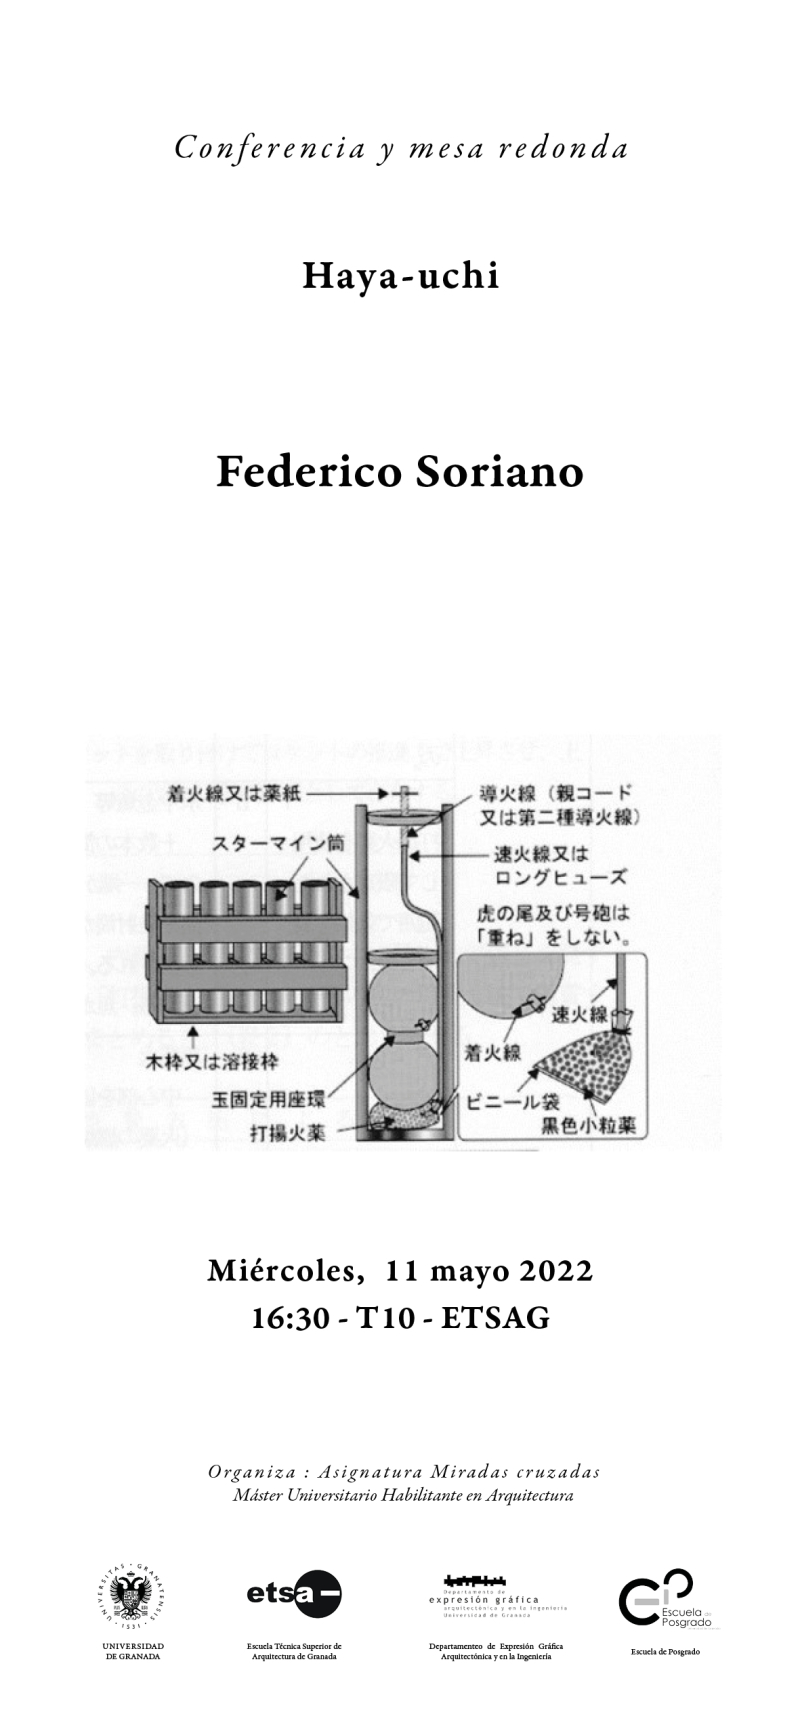 Cartel de la conferencia y mesa redonda de Federico Soriano